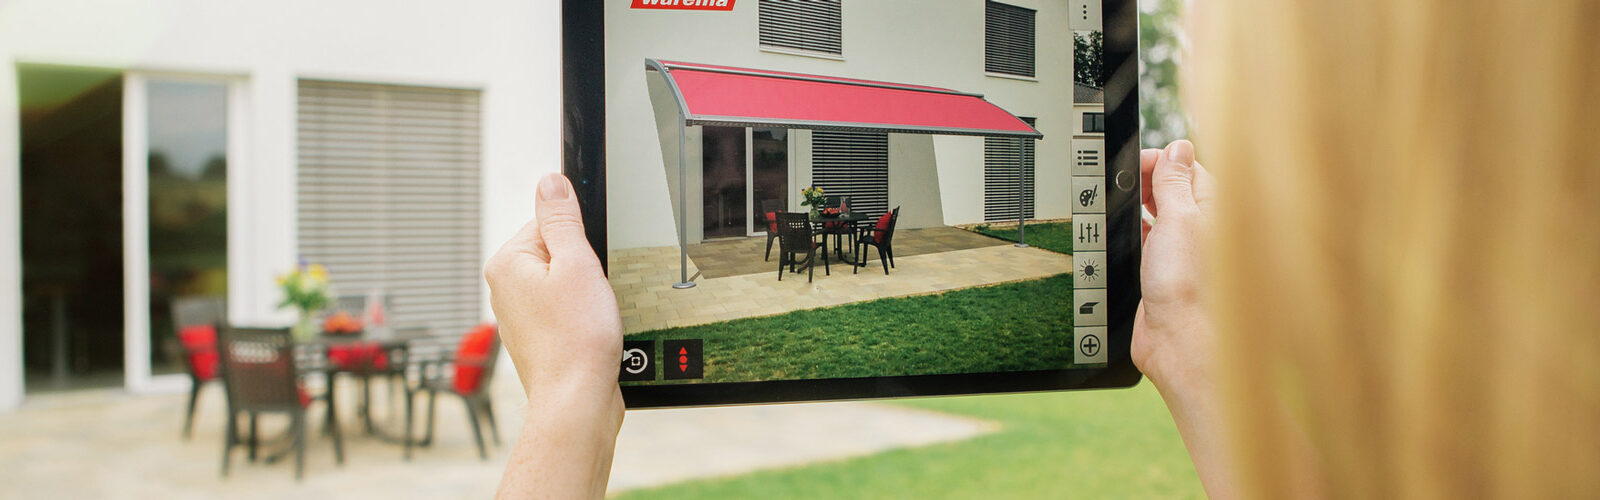 Warema Outdoor Living Produkte virtuell erleben mit AR-App